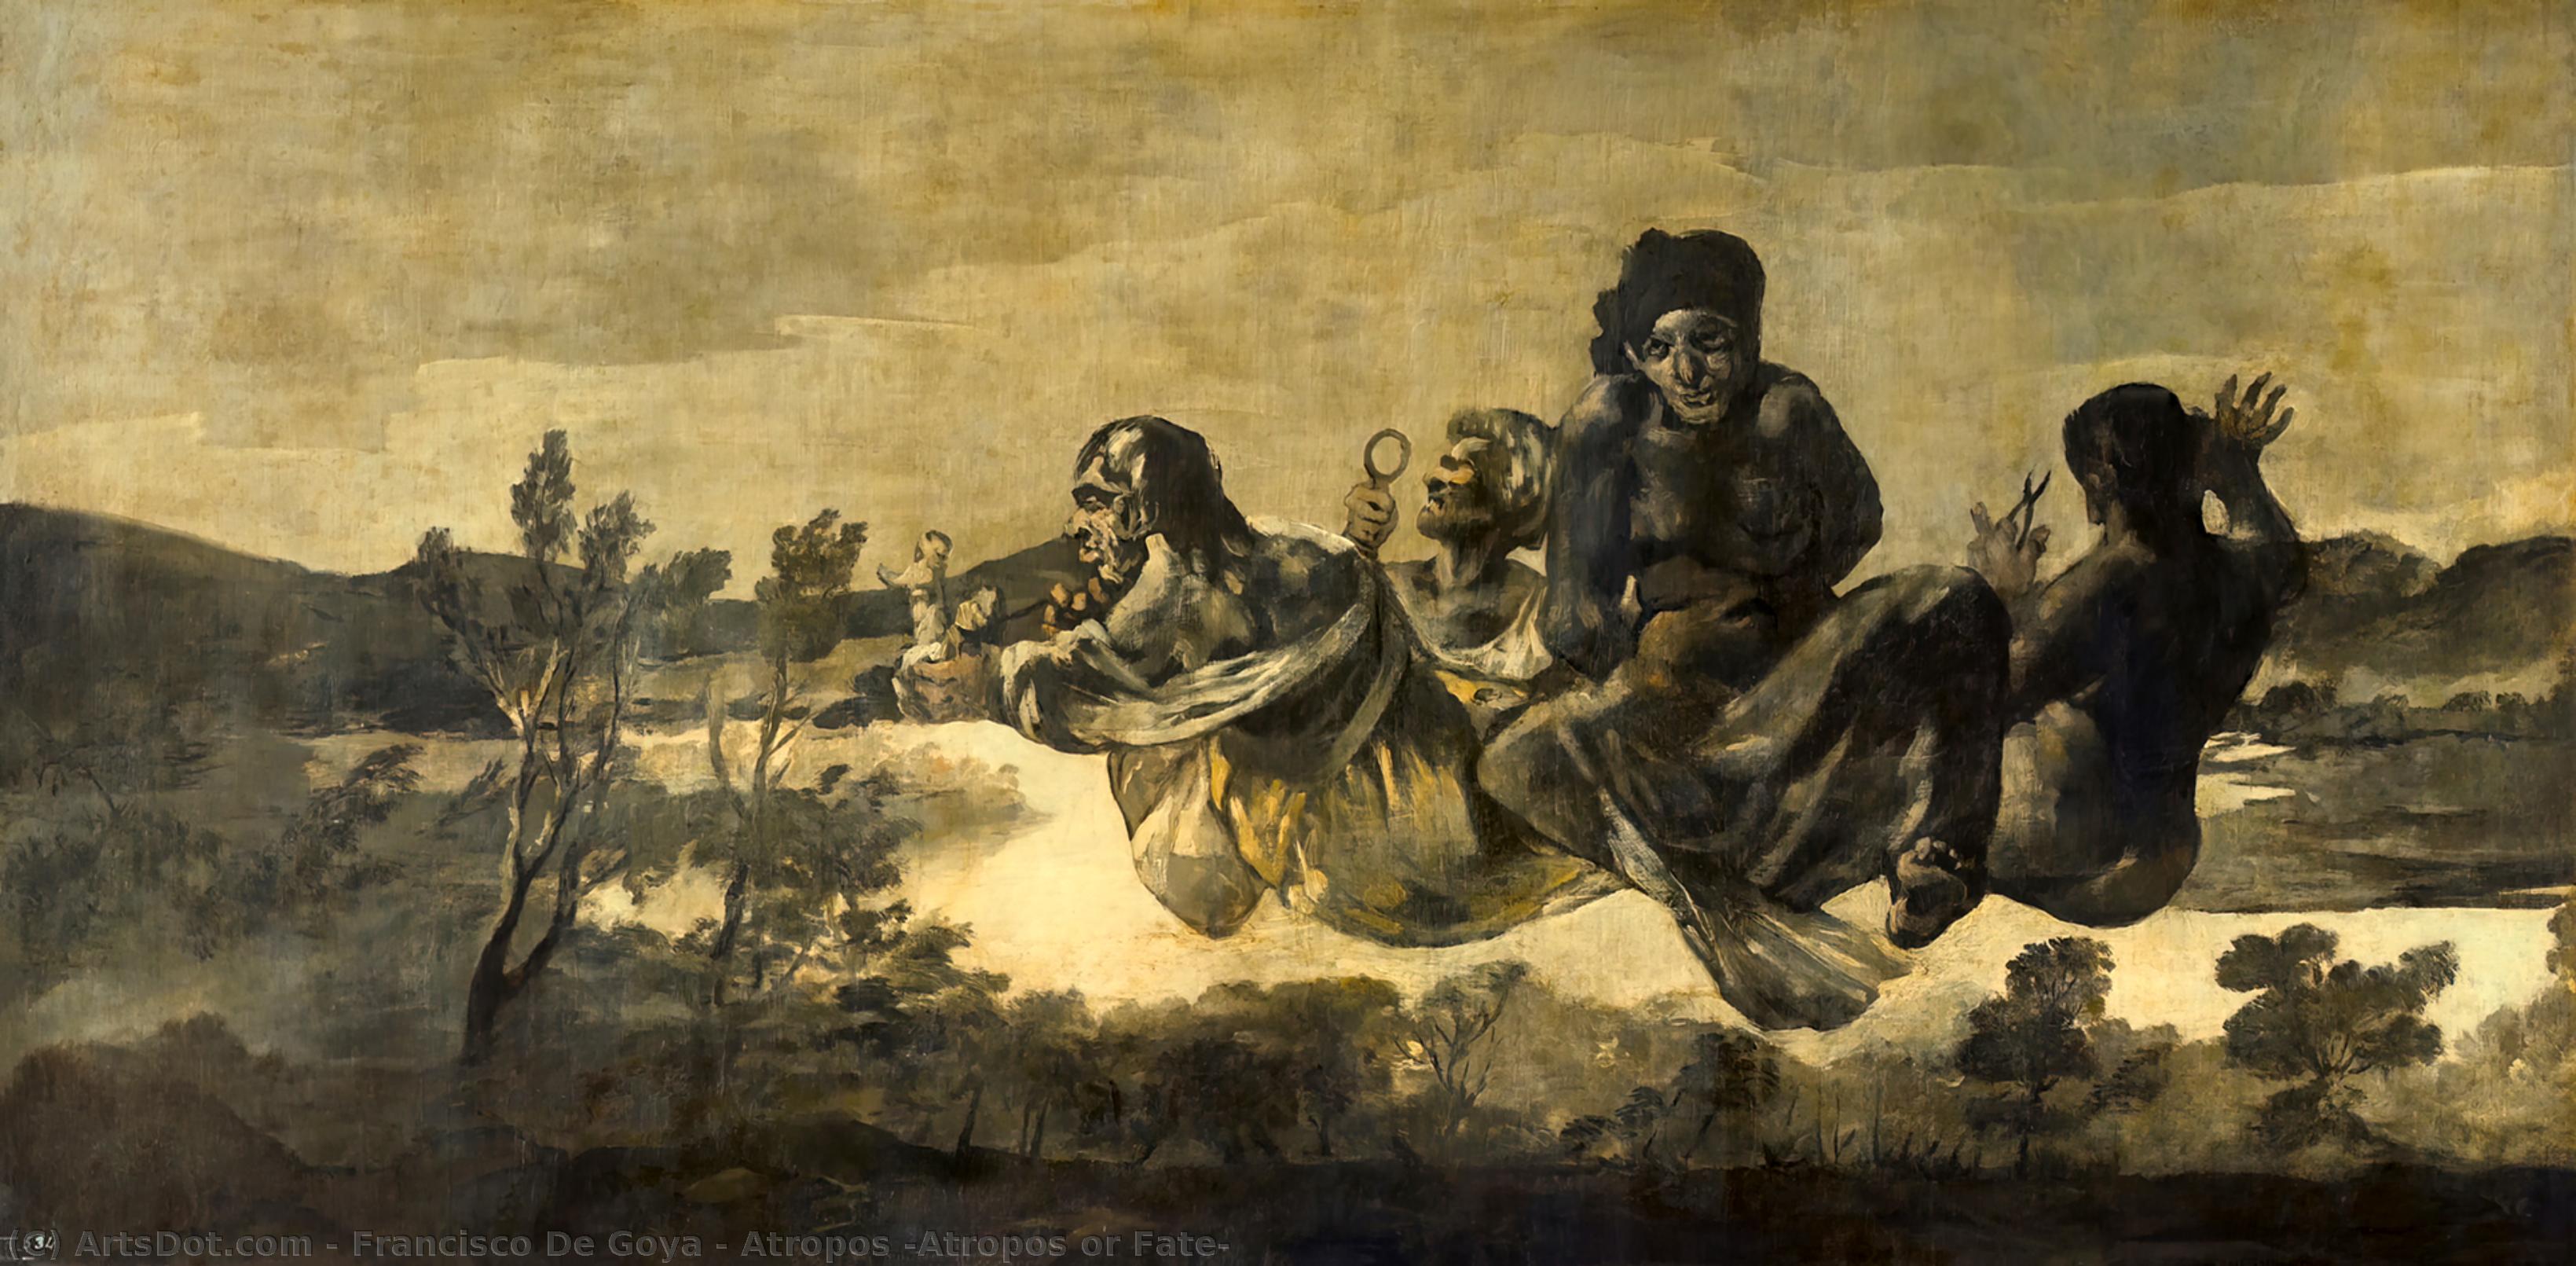 WikiOO.org - Enciclopédia das Belas Artes - Pintura, Arte por Francisco De Goya - Atropos (Atropos or Fate)